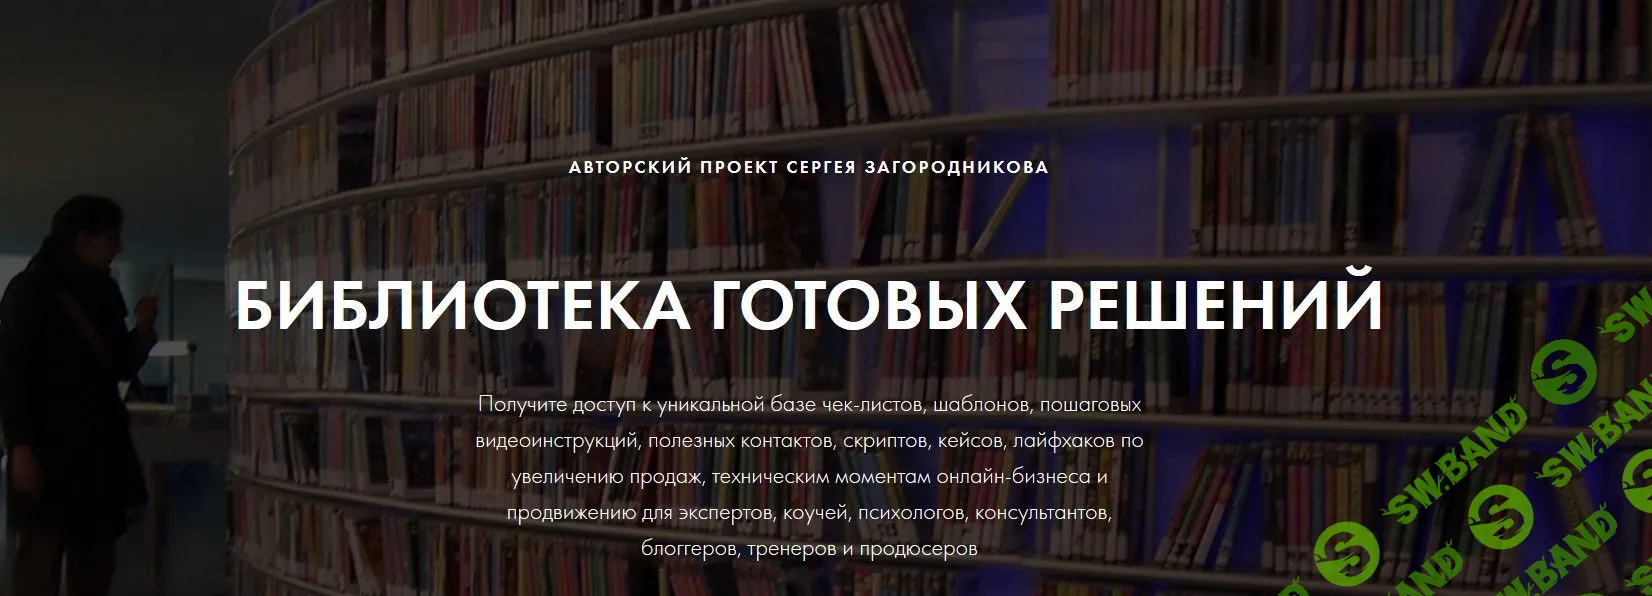 [Сергей Загородников] Библиотека готовых решений (2019)